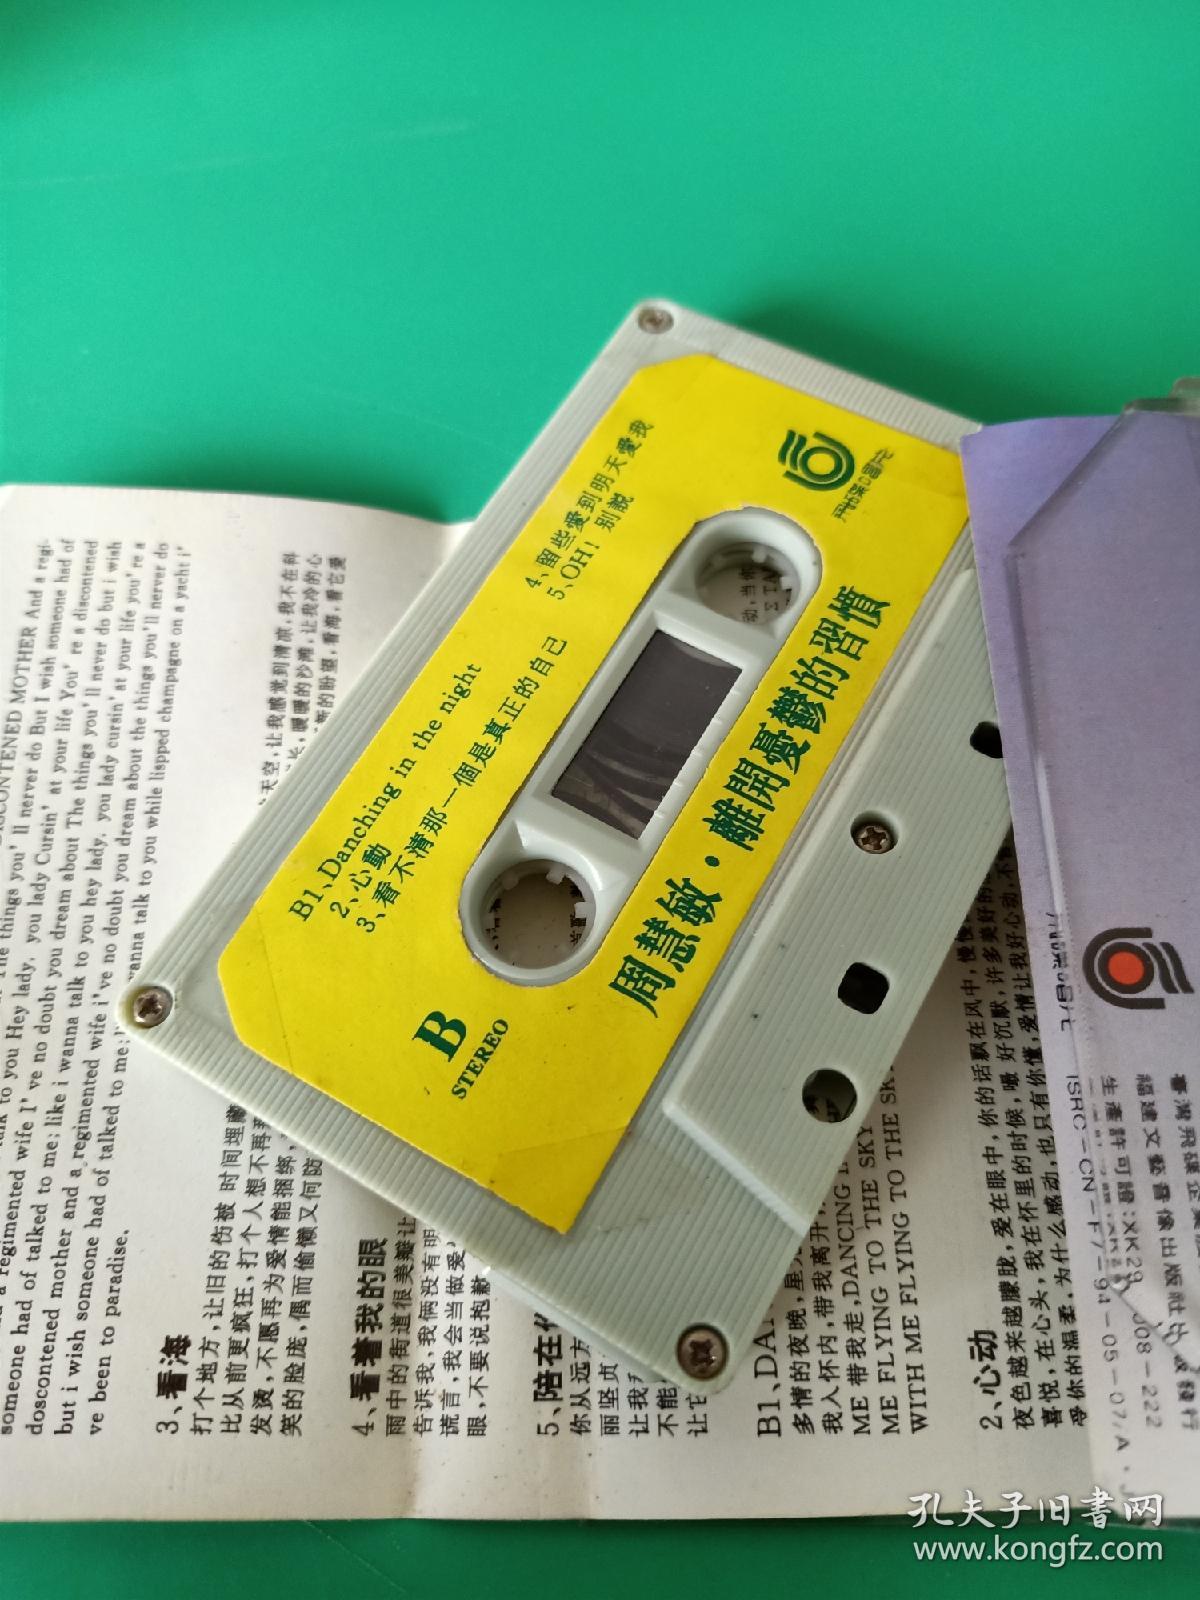 周慧敏《离开忧郁的习惯》磁带，台湾飞碟供版，福建文艺音像出版